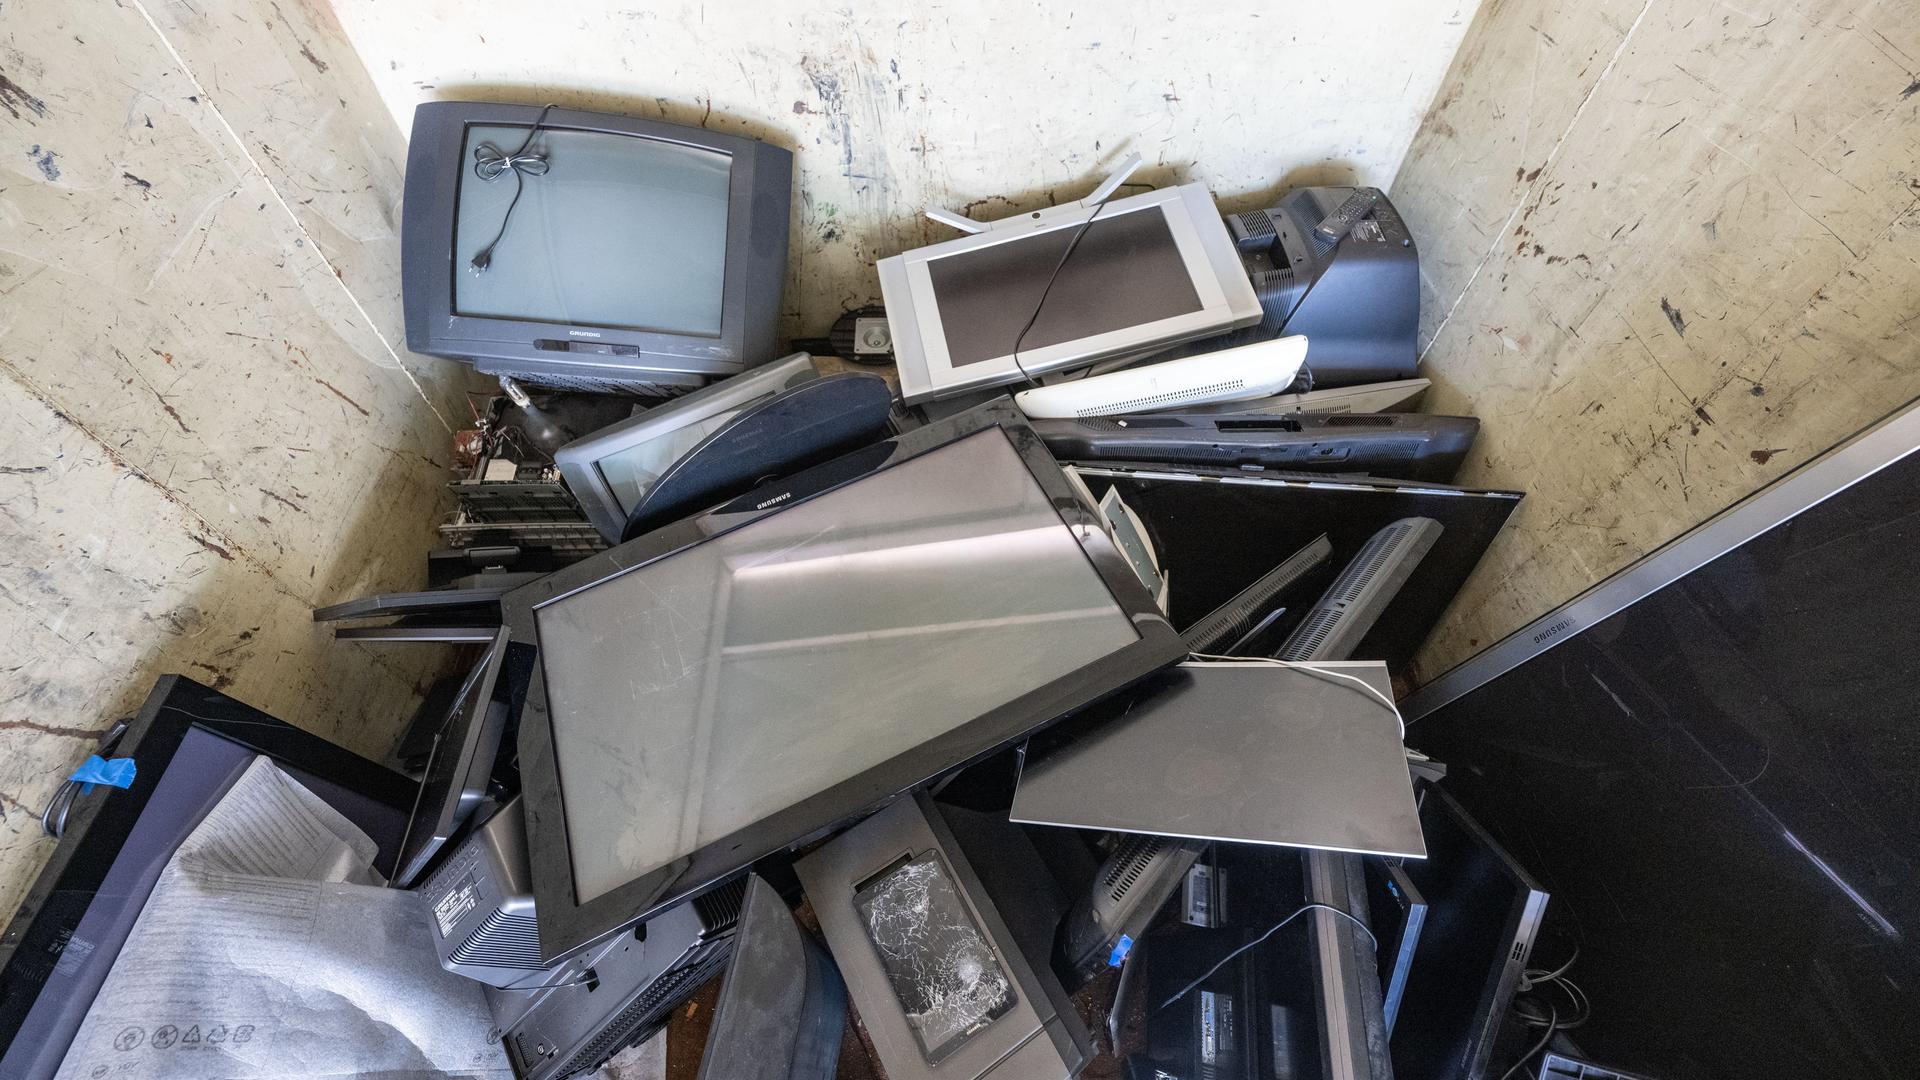 Alte und defekte Elektrogeräte liegen in einem Sammelcontainer auf einem Wertstoffhof. 